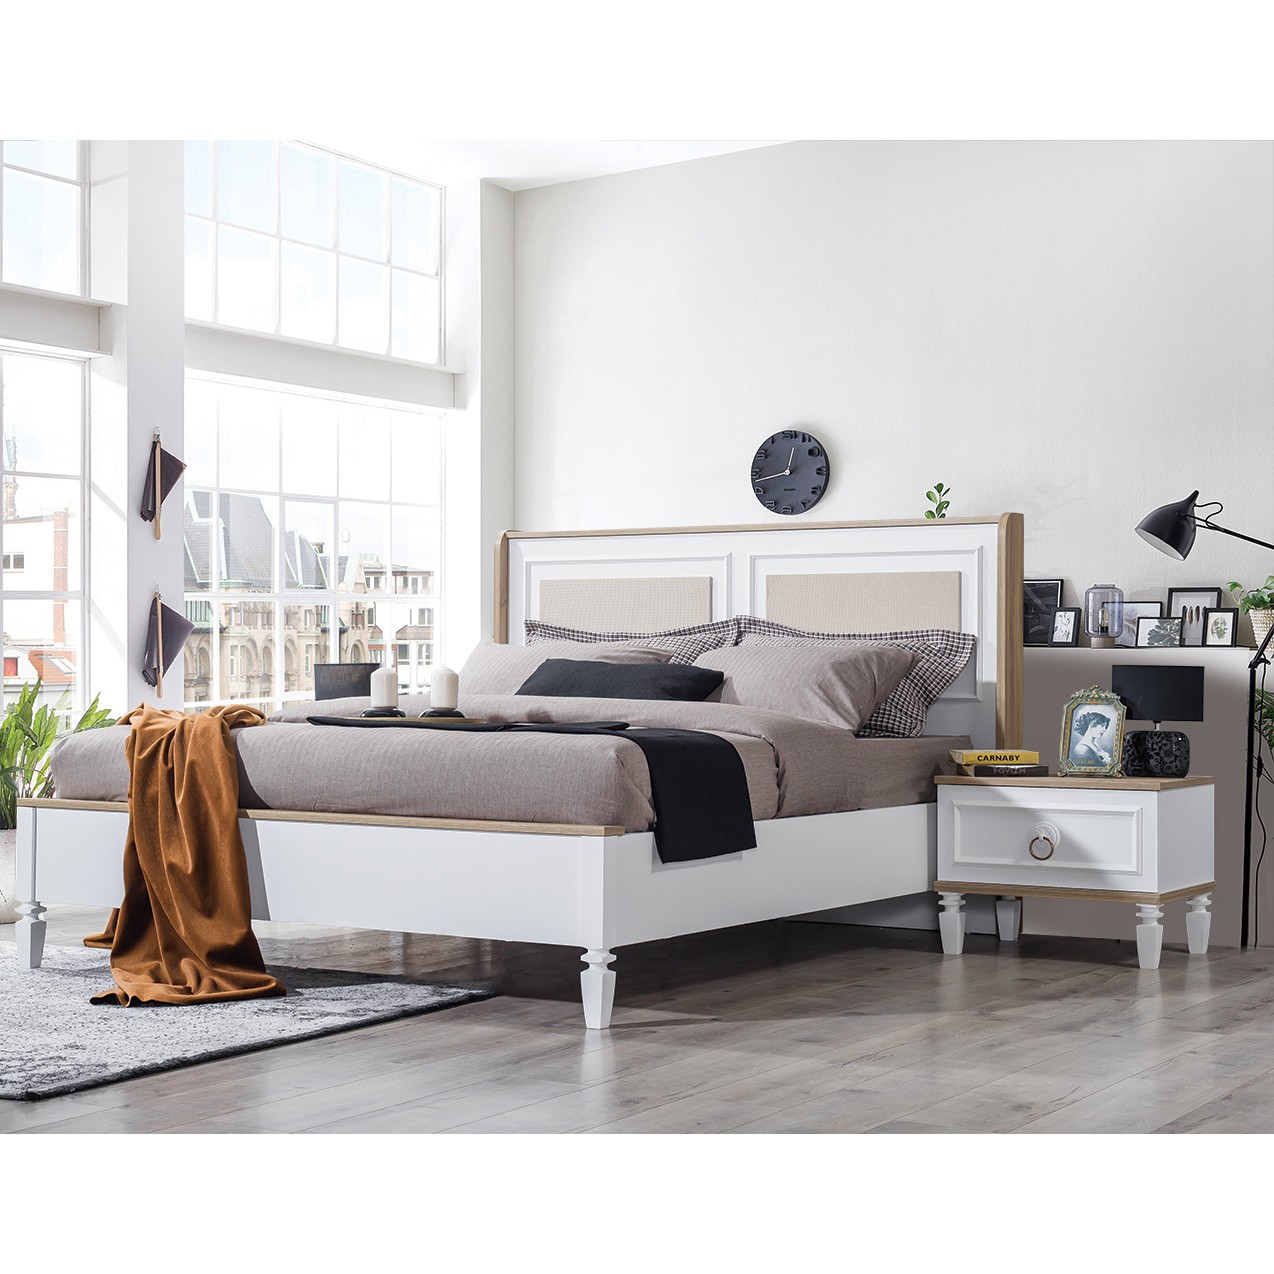 Mila Bed With Storage 160x200 cm